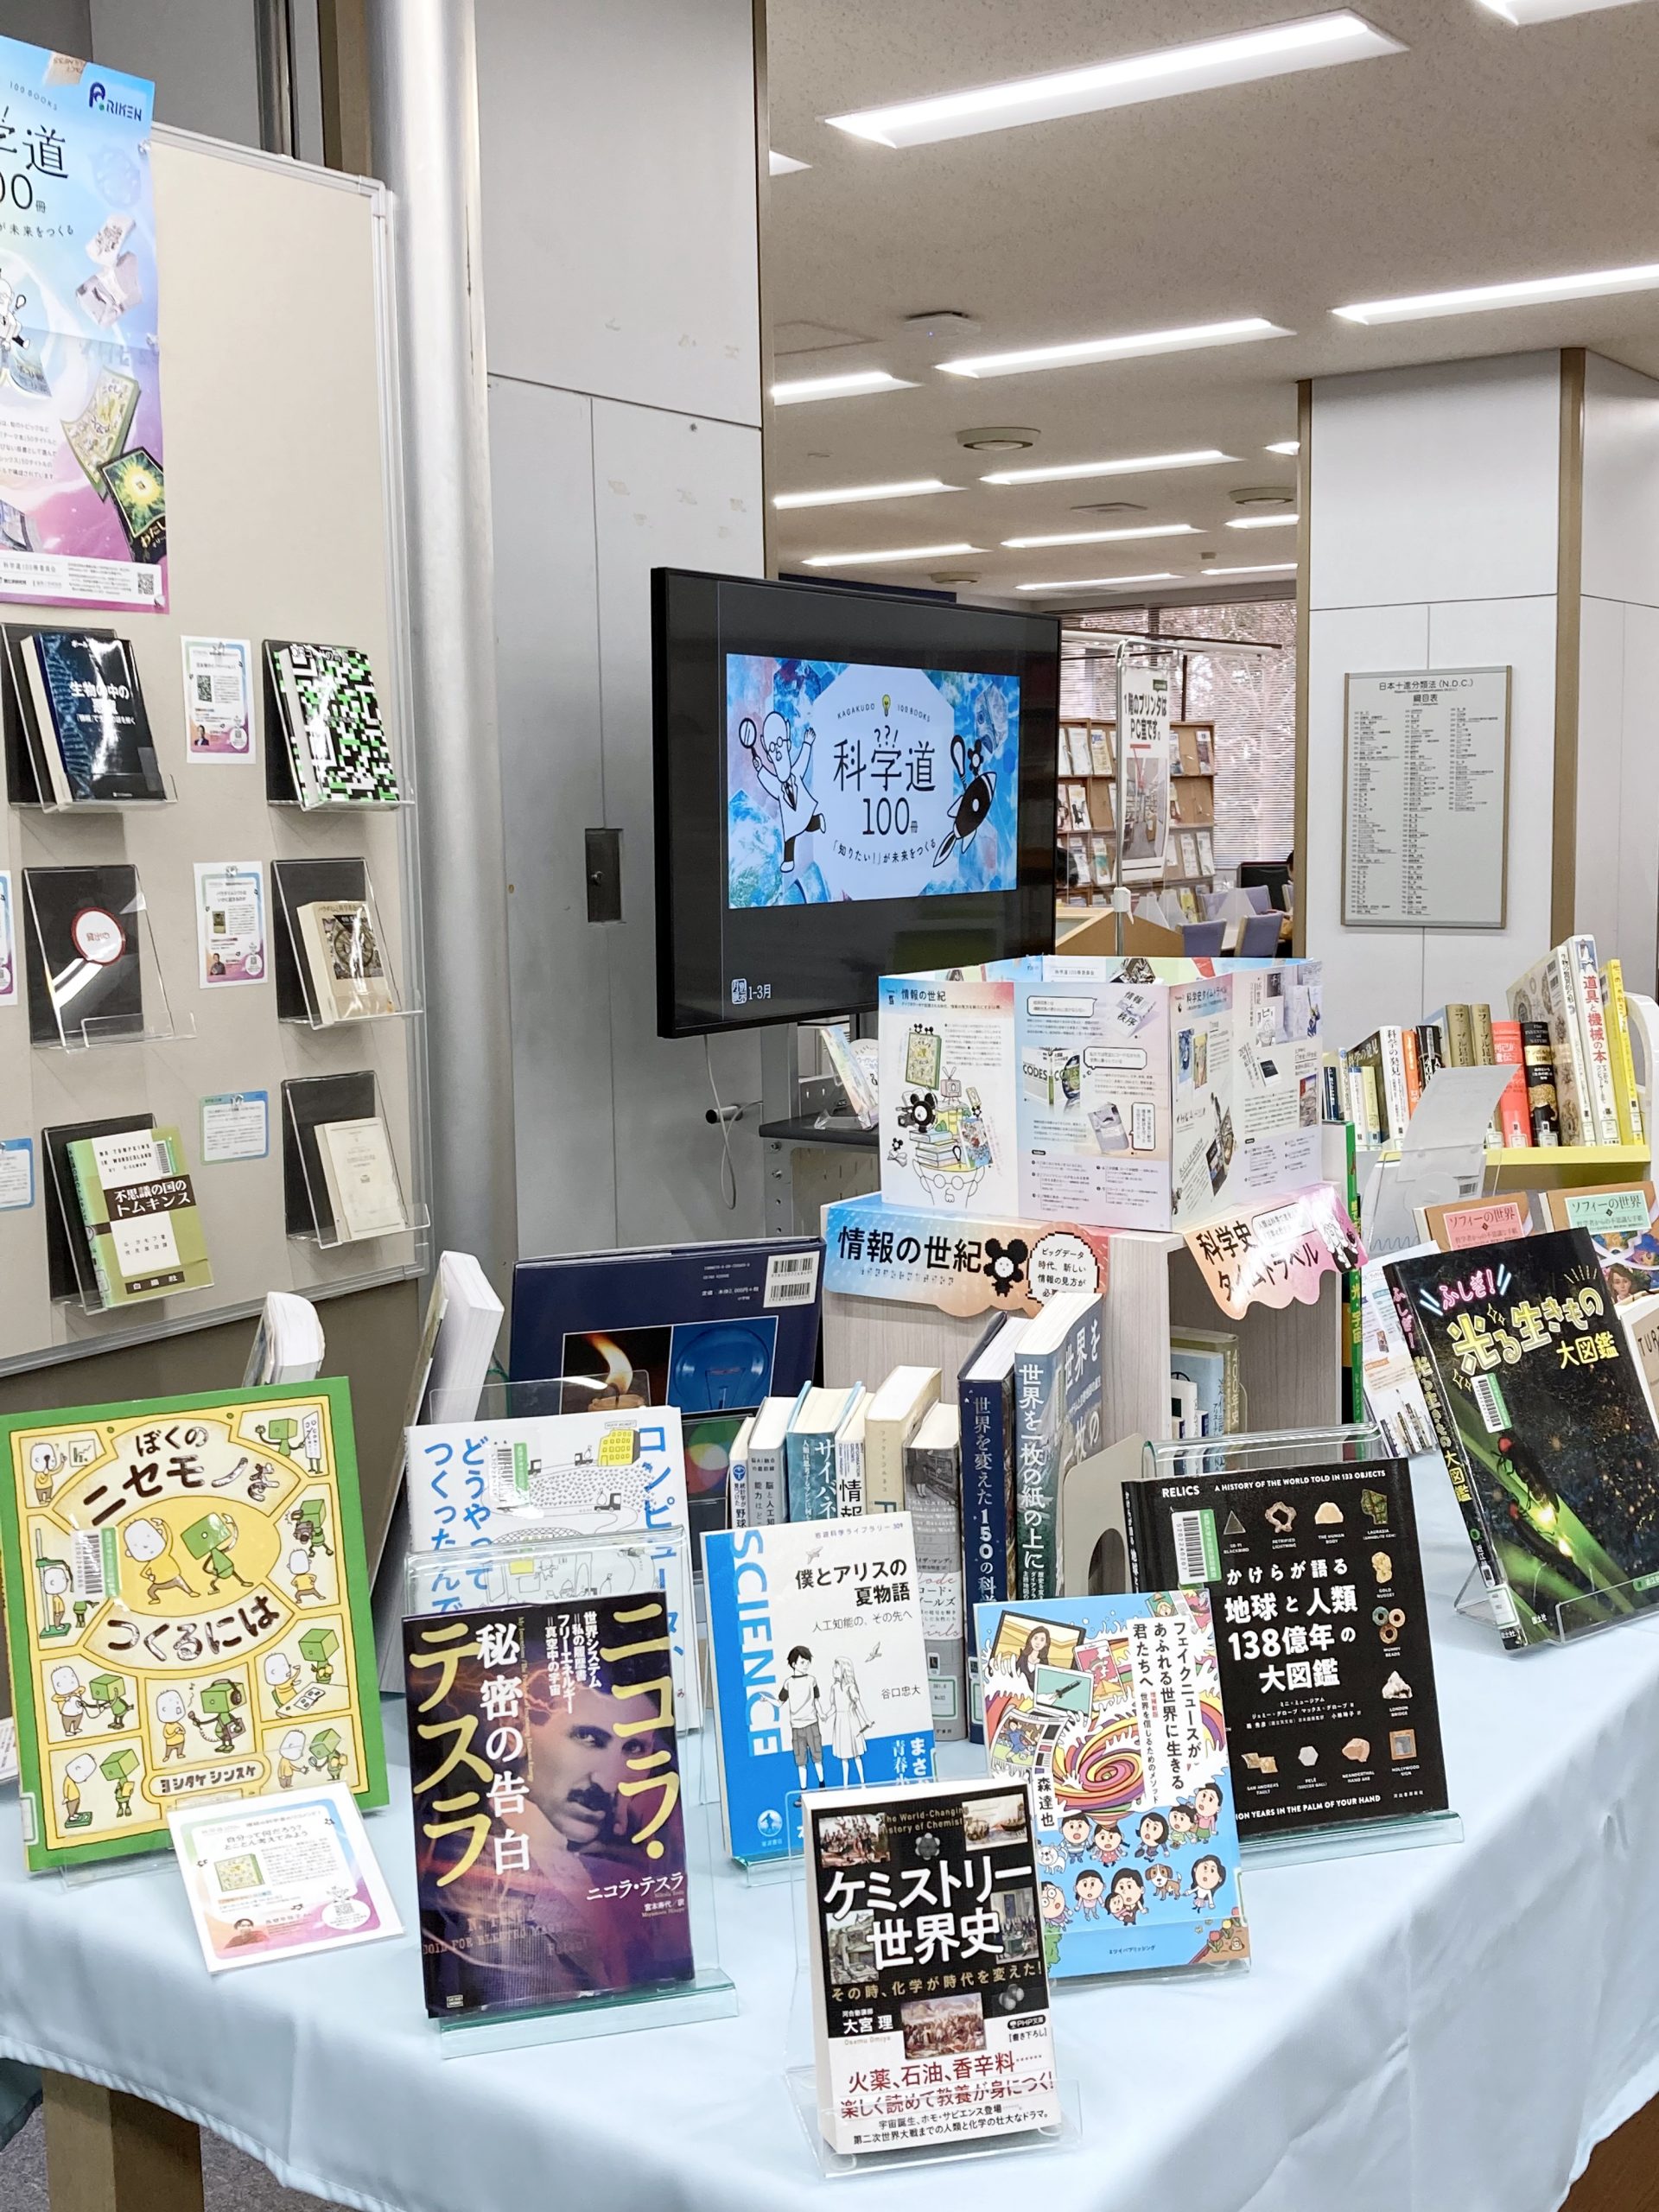 城西大学水田記念図書館の展示風景の写真